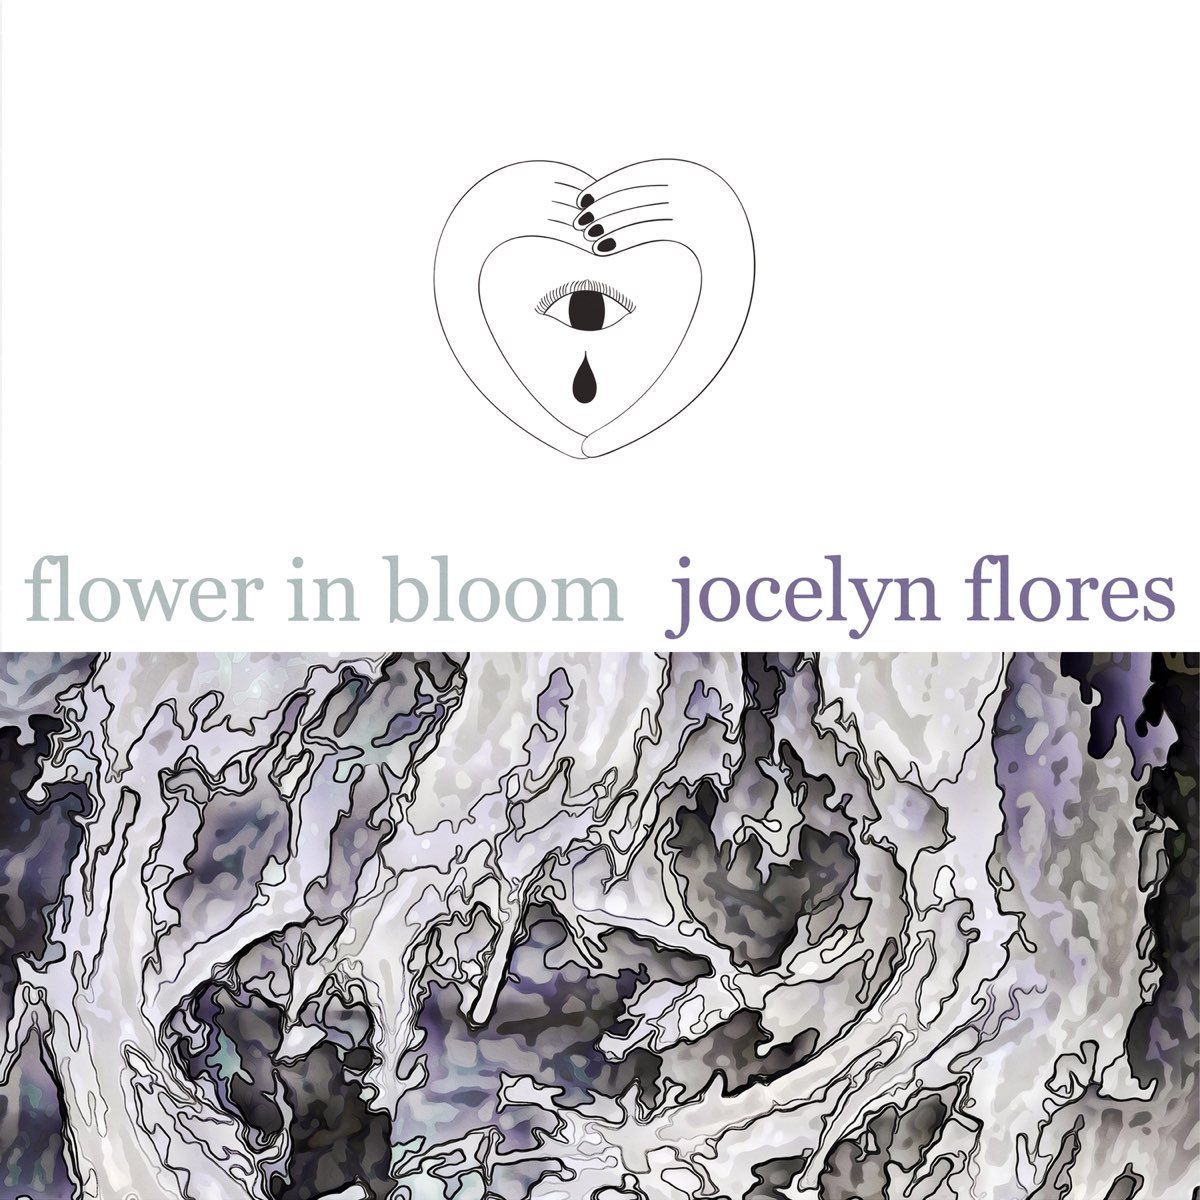 Jocelyn Flores (Acoustic) - Single de Flower in Bloom en Apple Music